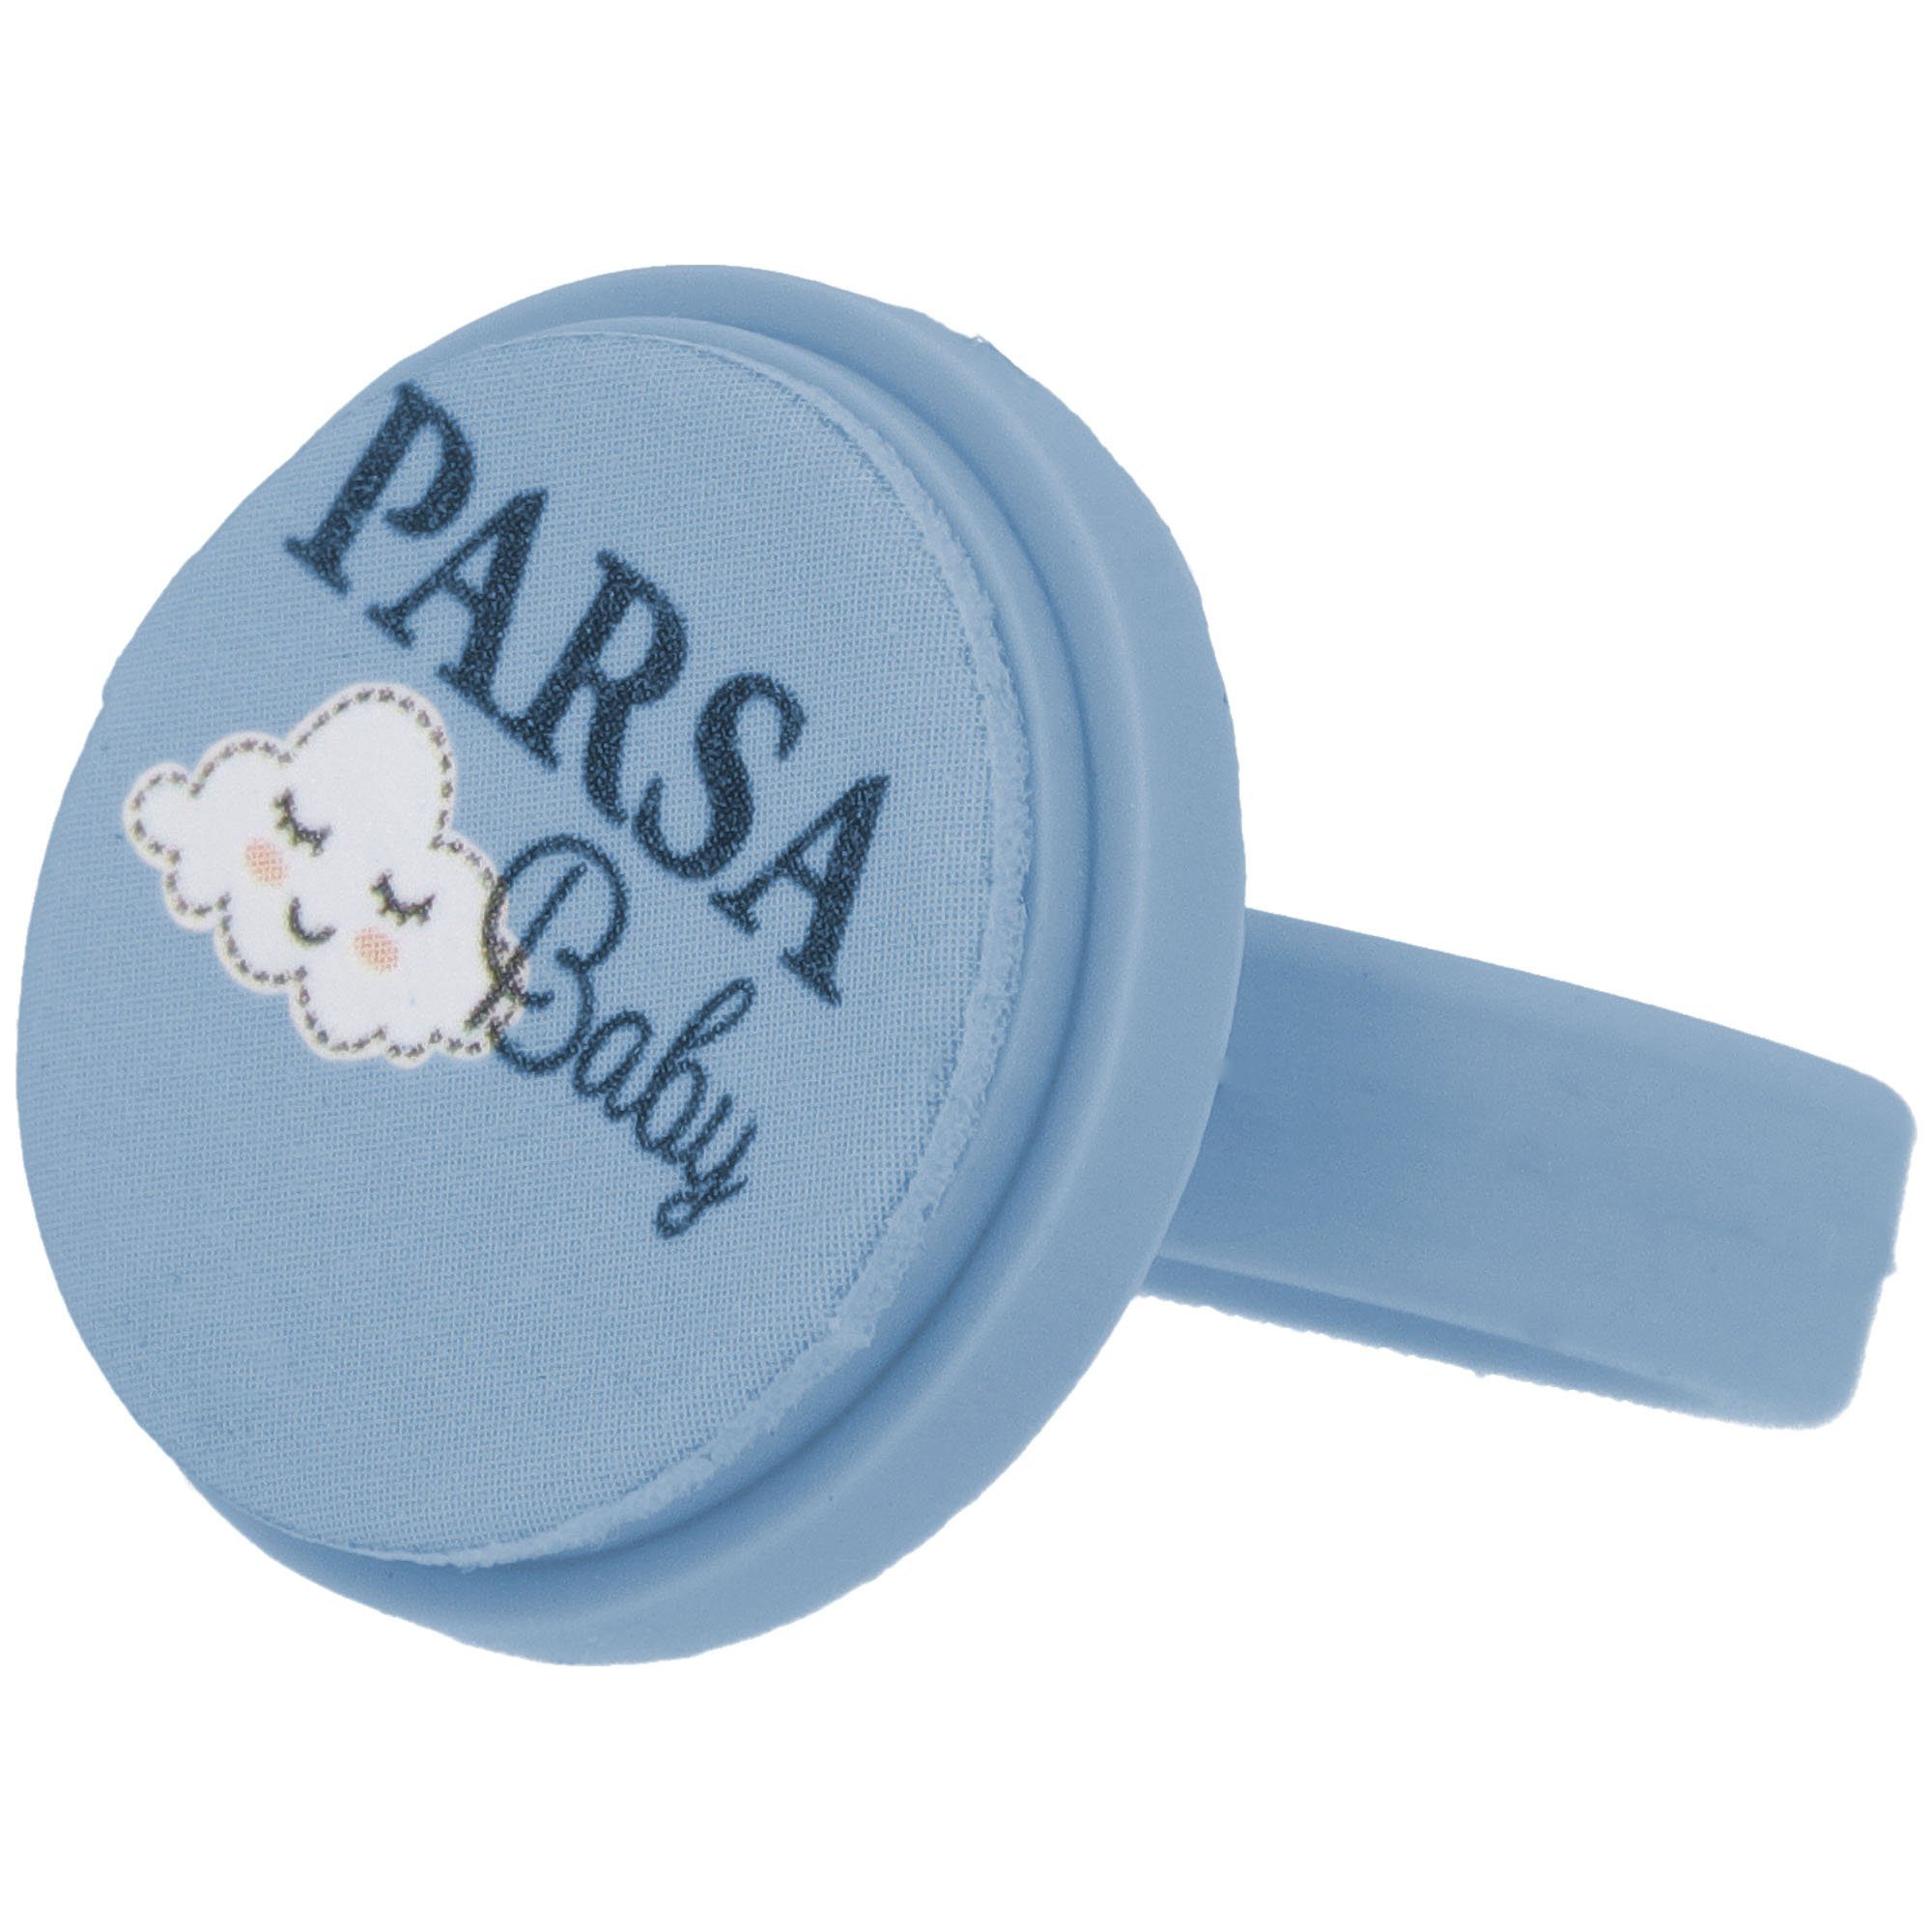 PARSA Beauty für PARSA Baby / Einwegfeilen Nagelpflege mit Baby-Fußnagelknipser Nagelfeilring Feilpads 7 Babys